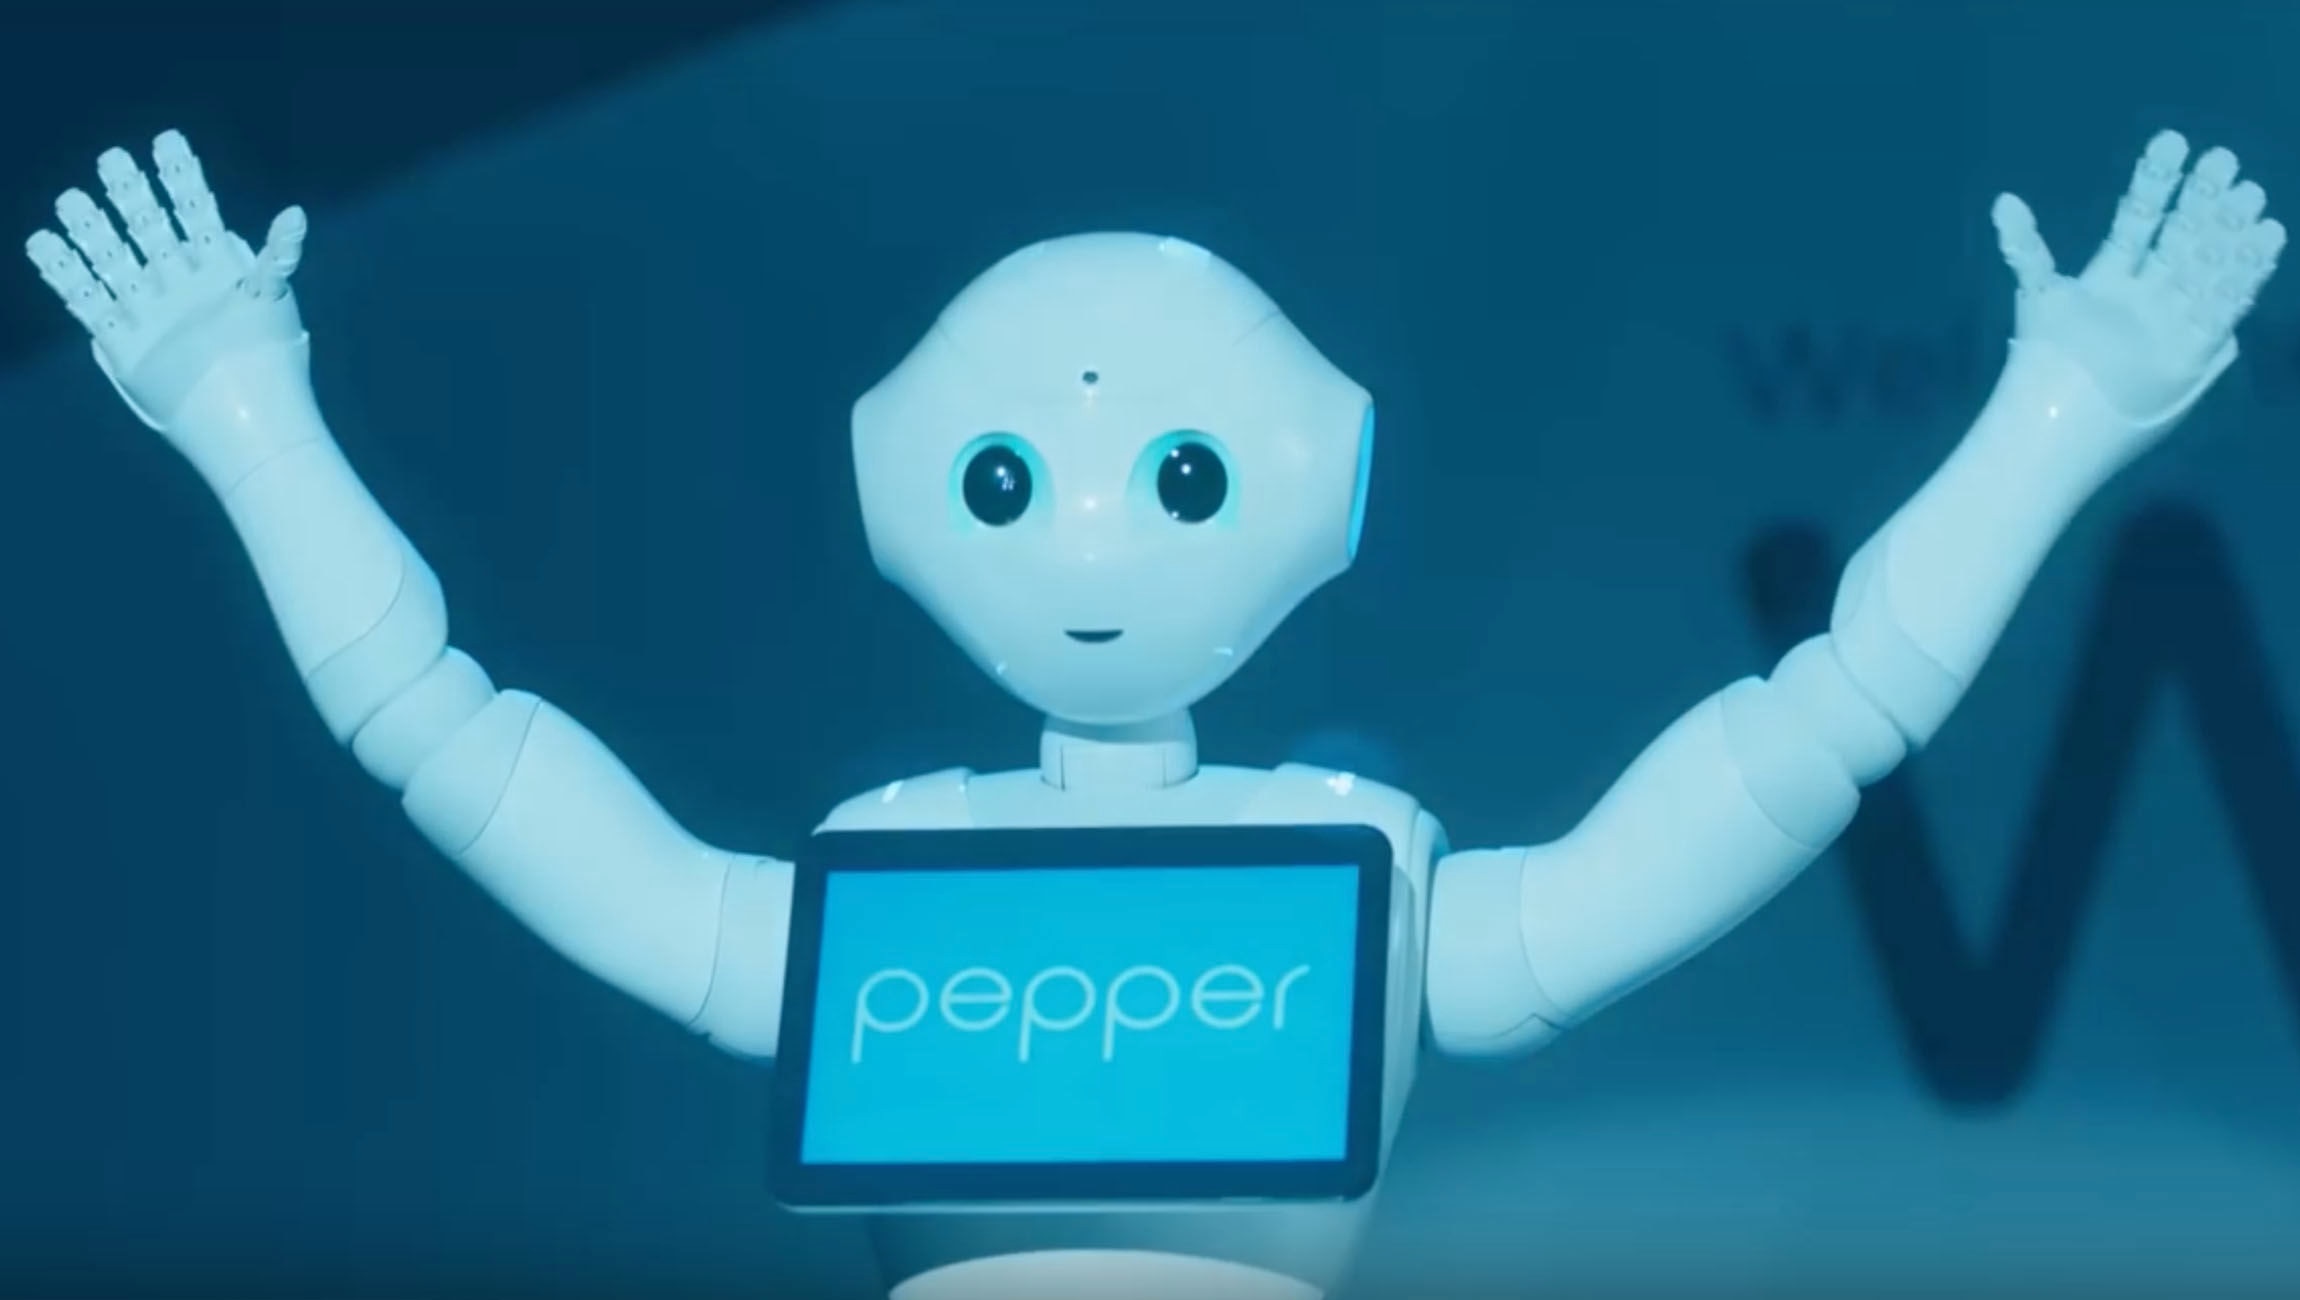 Pepper the robot